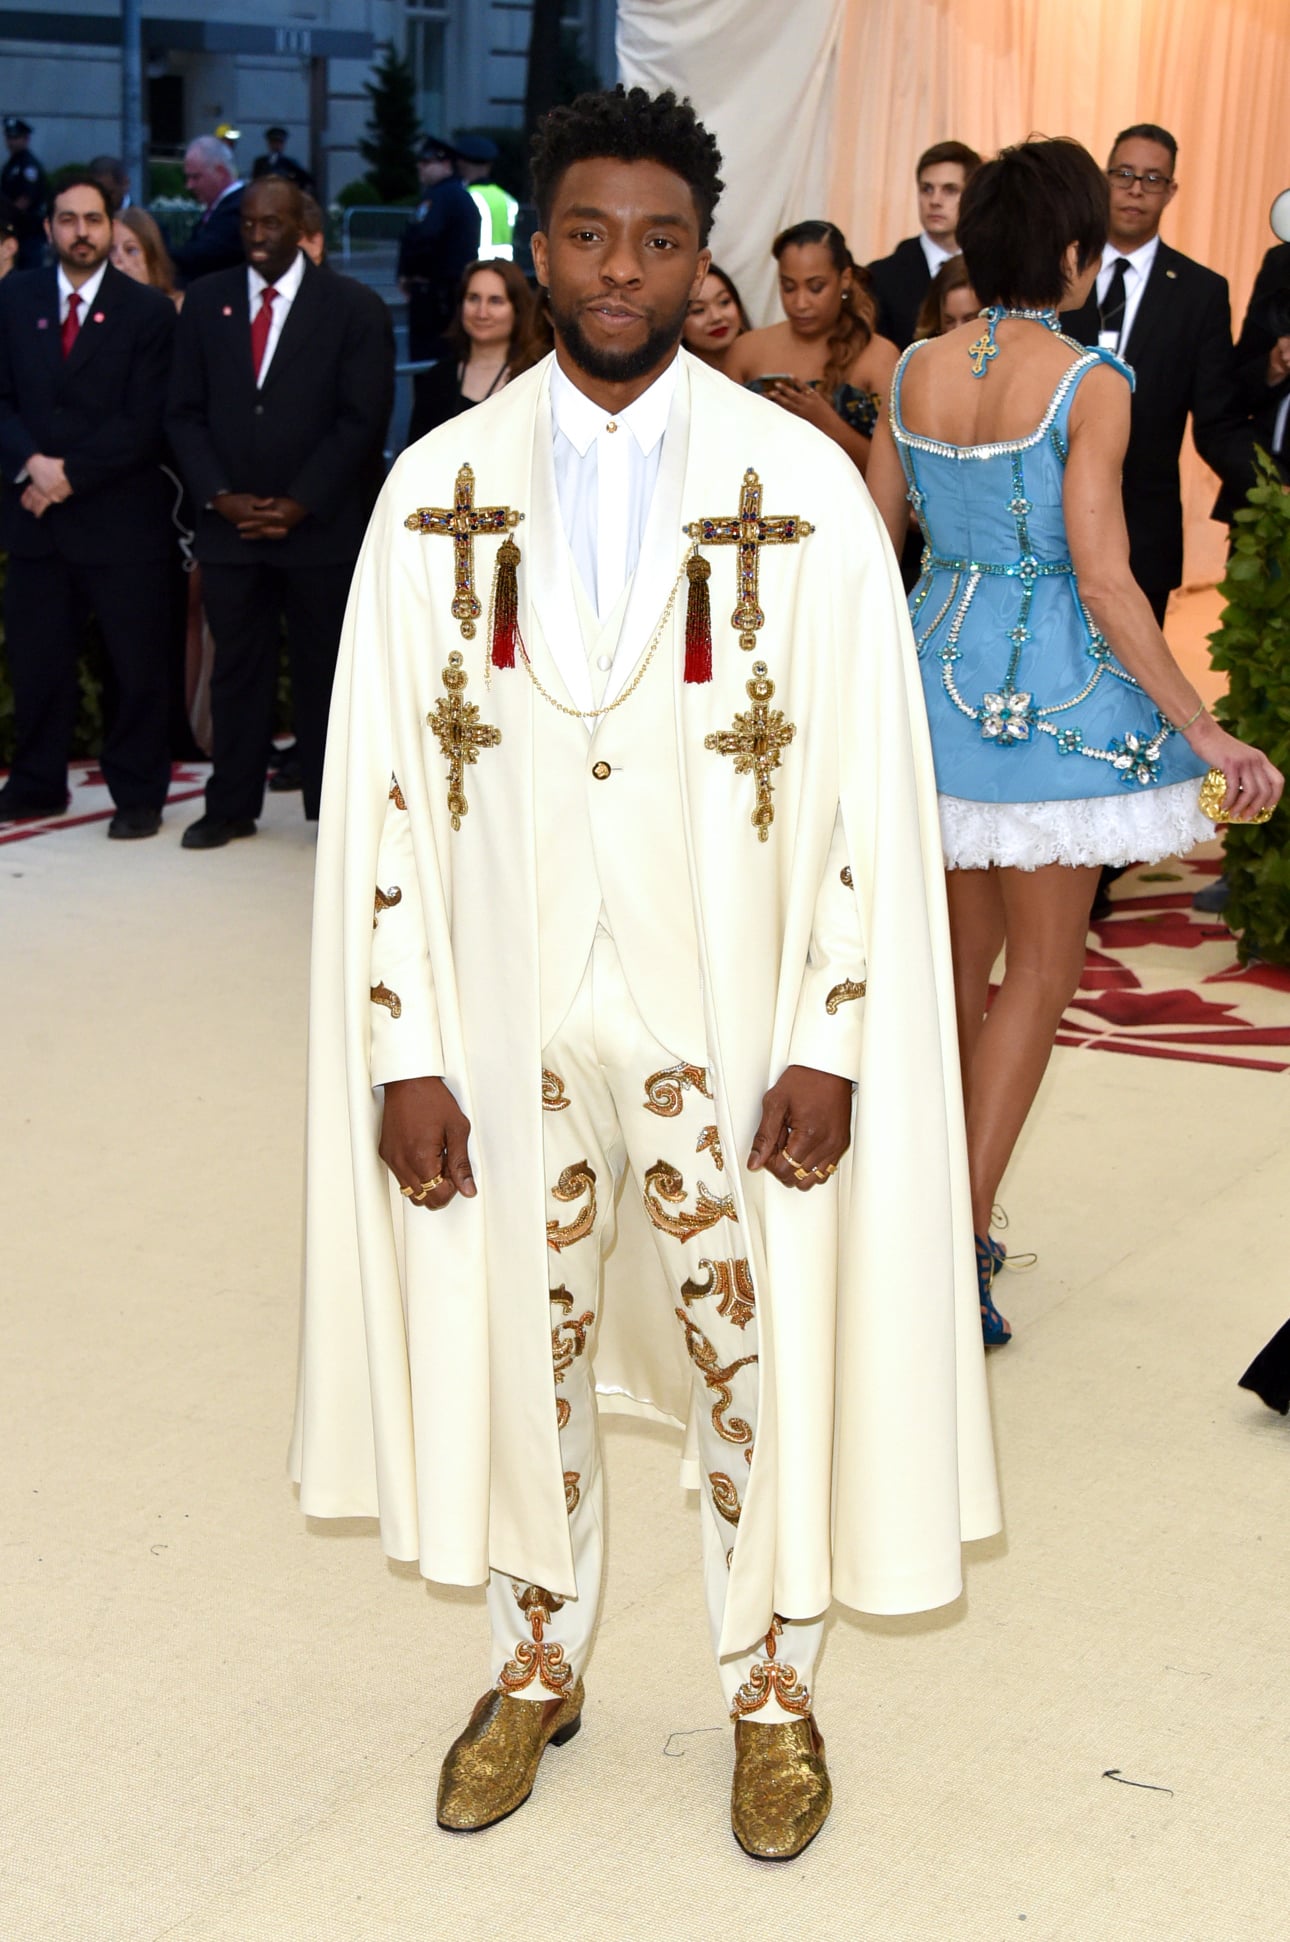 Nam diễn viên quá cố Chadwick Boseman xuất hiện như một vị vua thực thụ ngoài đời với suit, áo choàng được điểm xuyết bằng những phụ kiện liên quan đến công giáo mang ánh vàng kim sang chảnh.